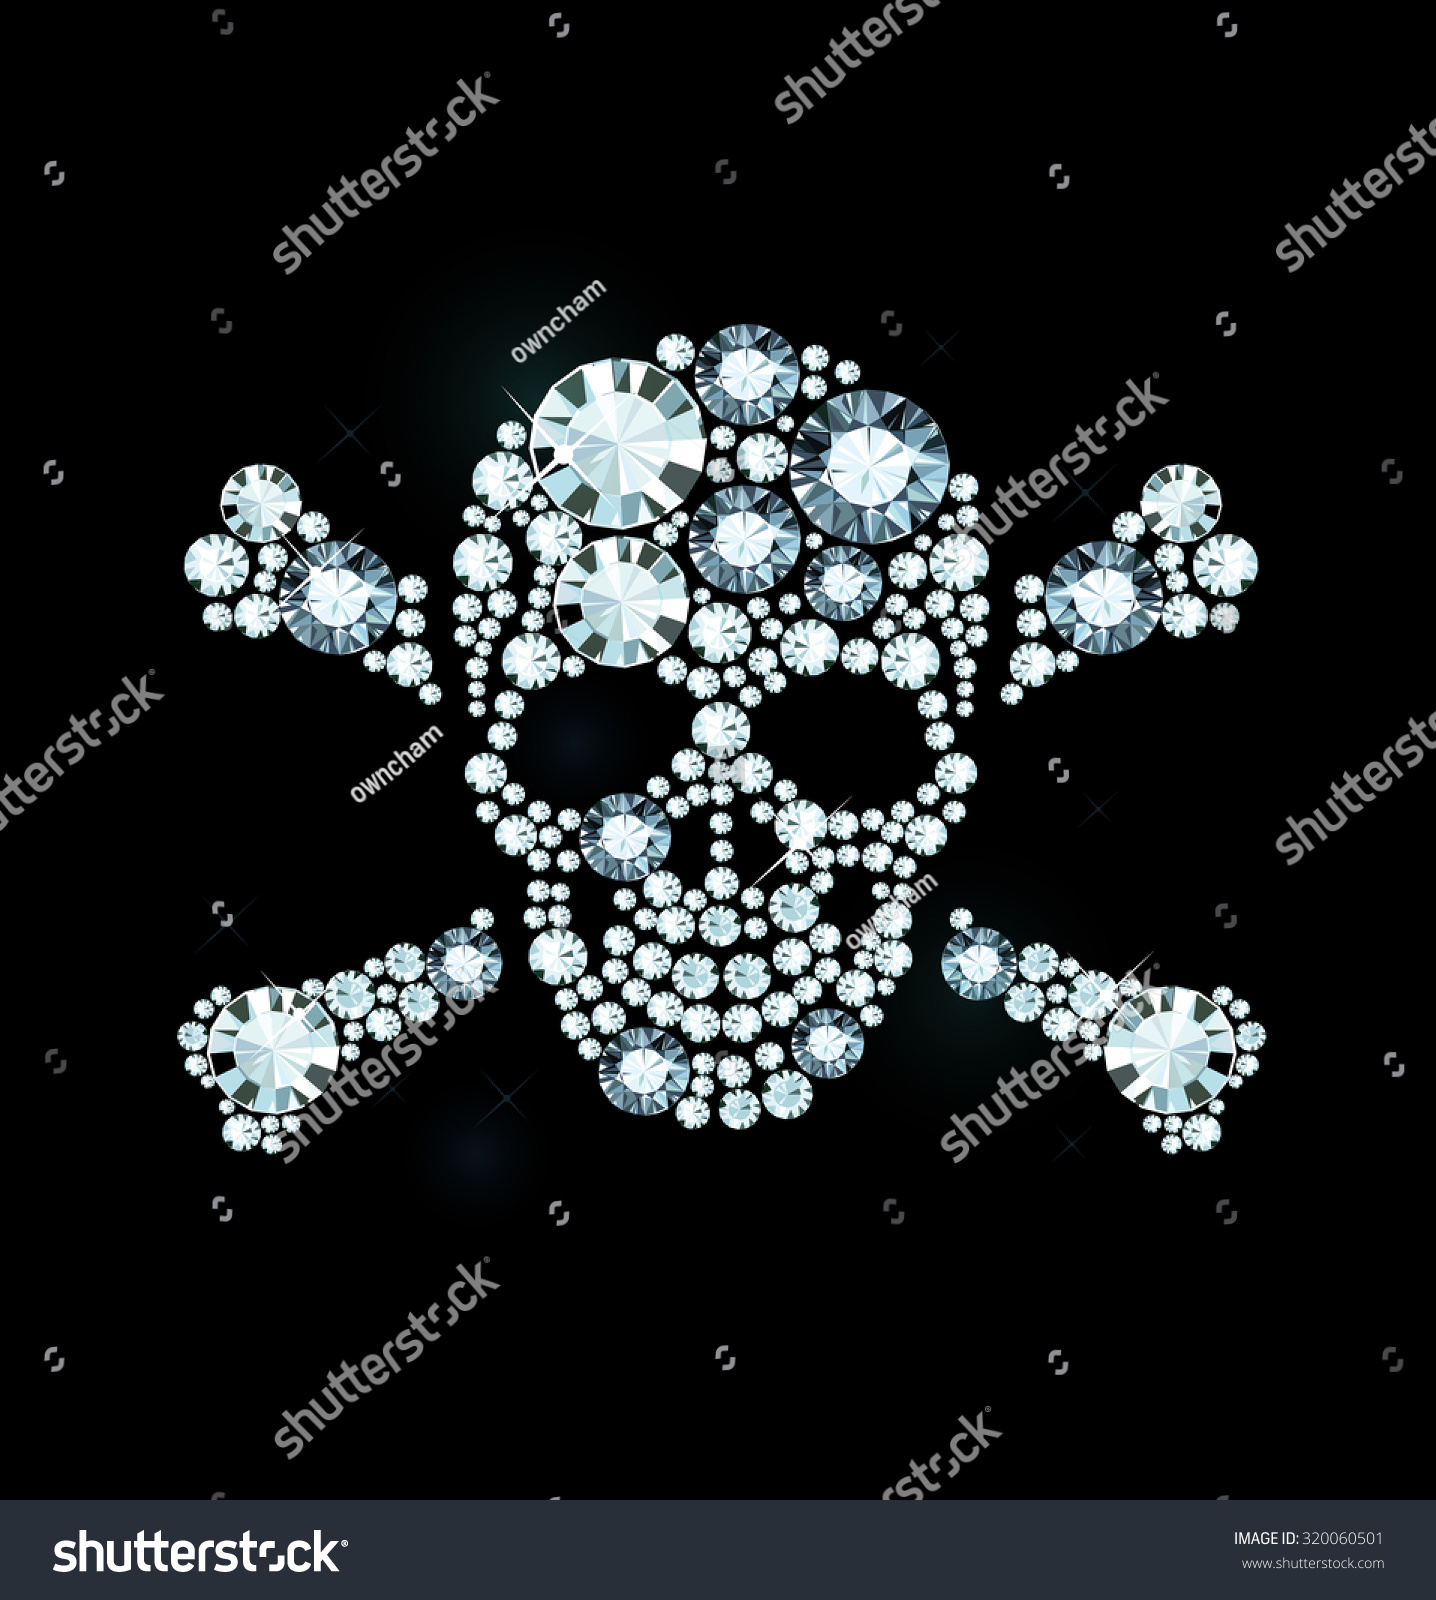 Diamond Skull And Crossbones Stock Vector Illustration 320060501 ...